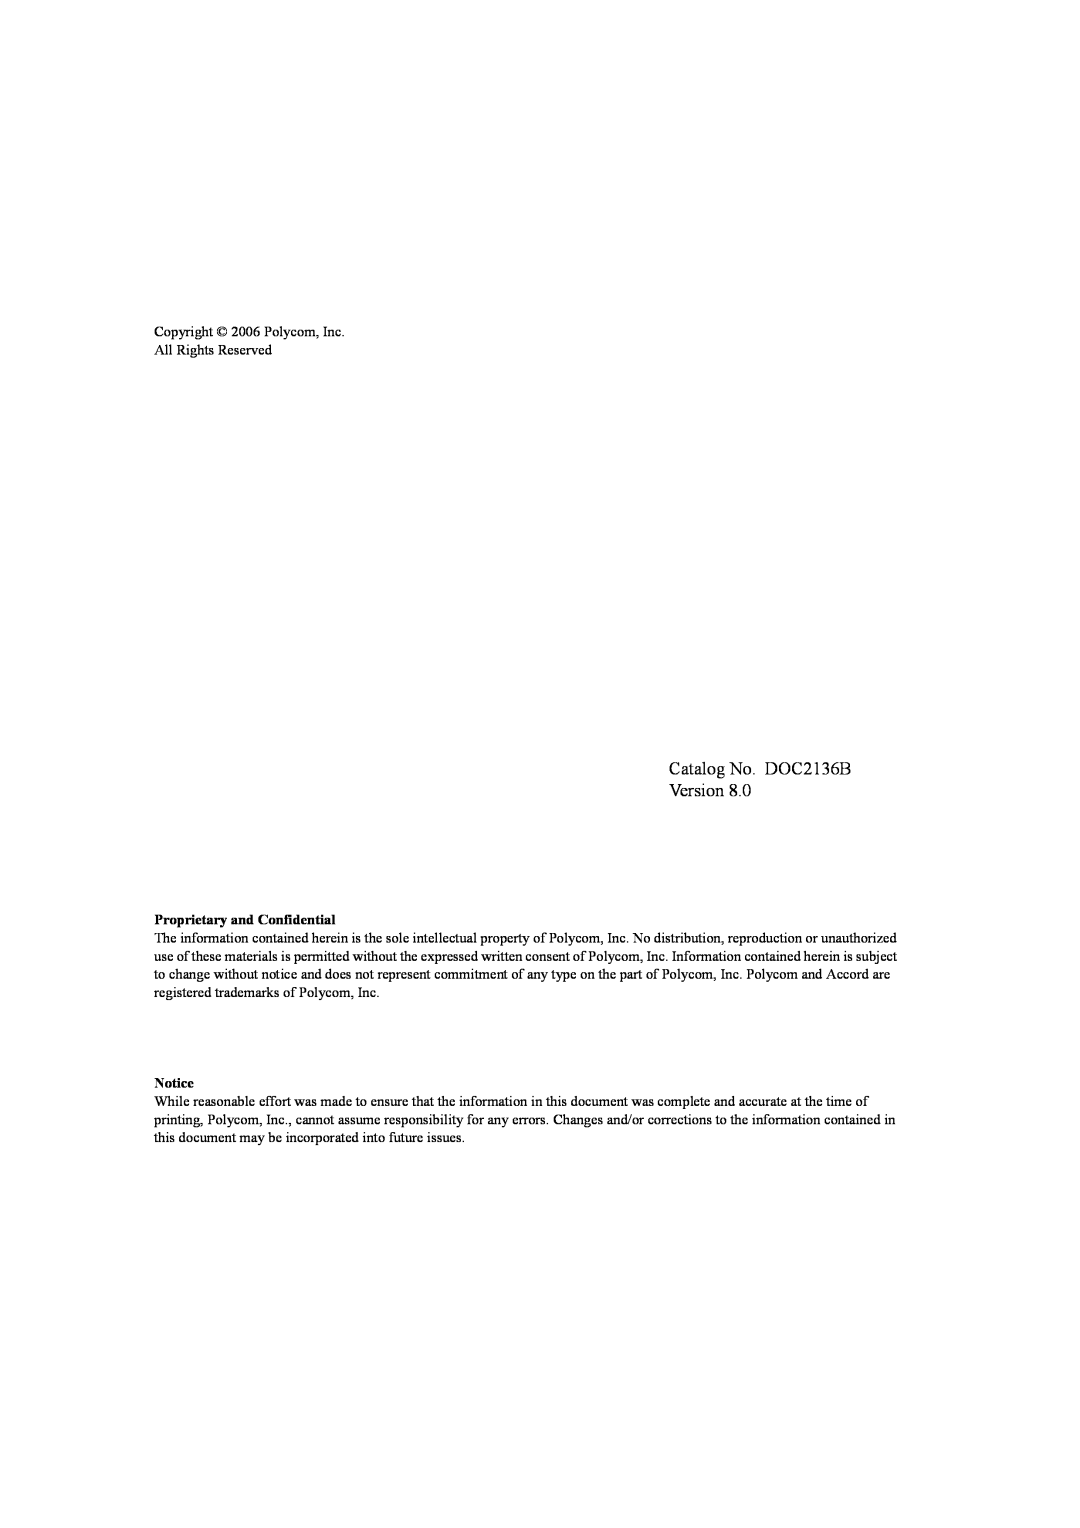 Polycom 8 manual Catalog No. DOC2136B Version, Proprietary and Confidential, Notice 